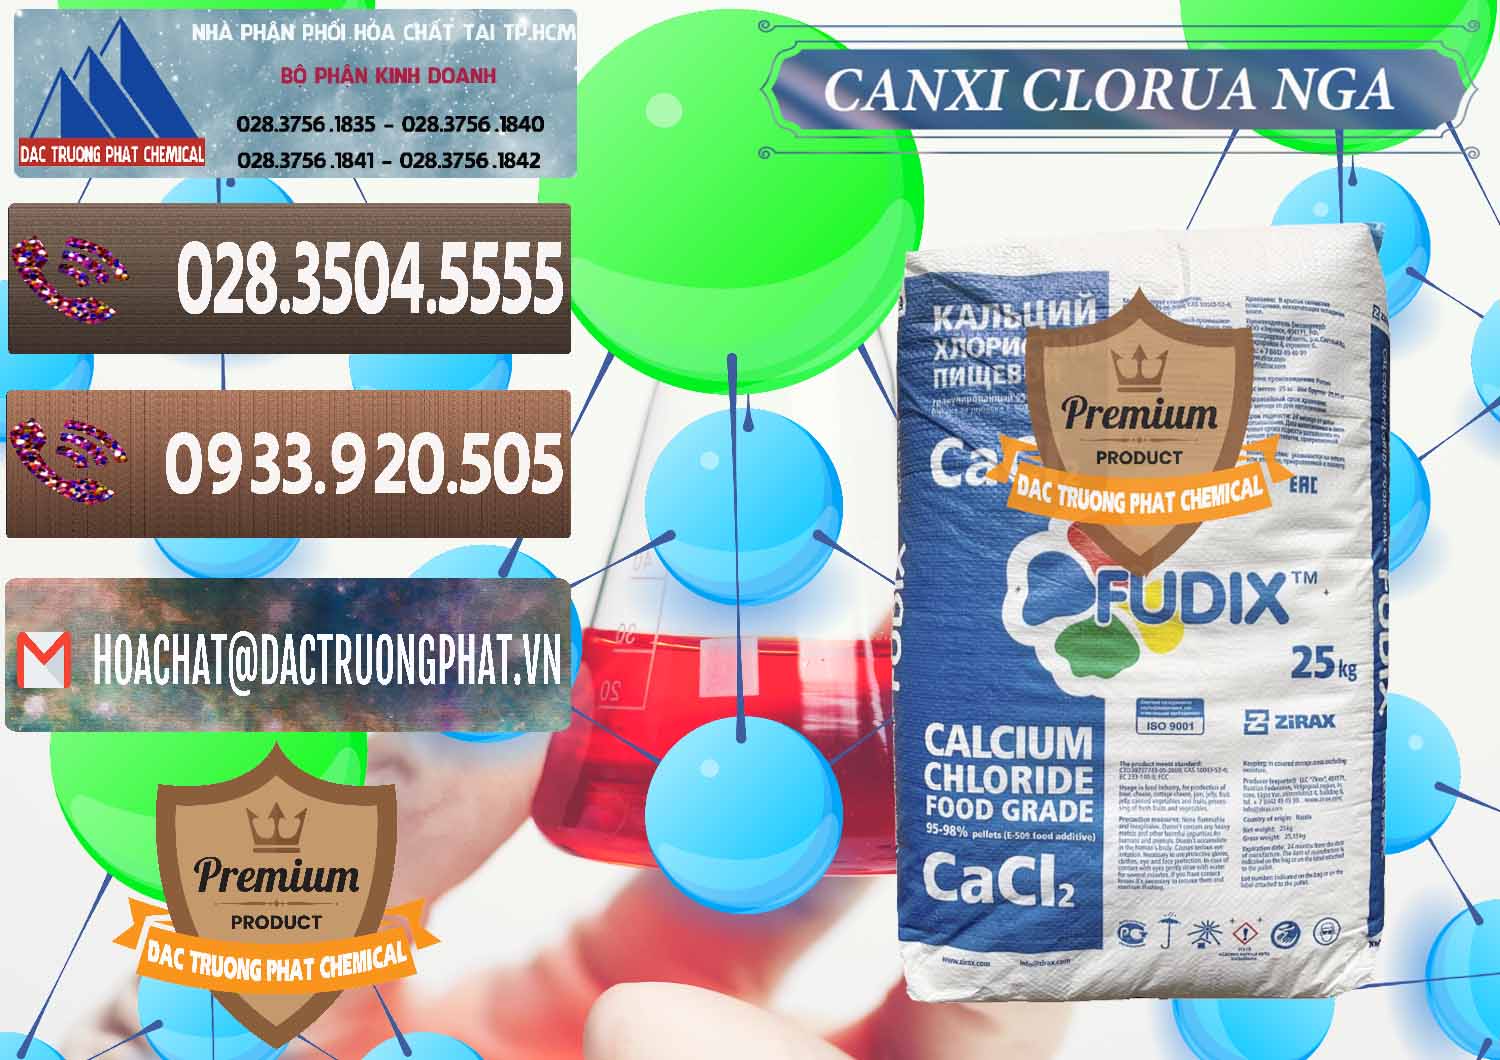 Đơn vị cung cấp và bán CaCl2 – Canxi Clorua Nga Russia - 0430 - Chuyên bán - phân phối hóa chất tại TP.HCM - hoachatviet.net